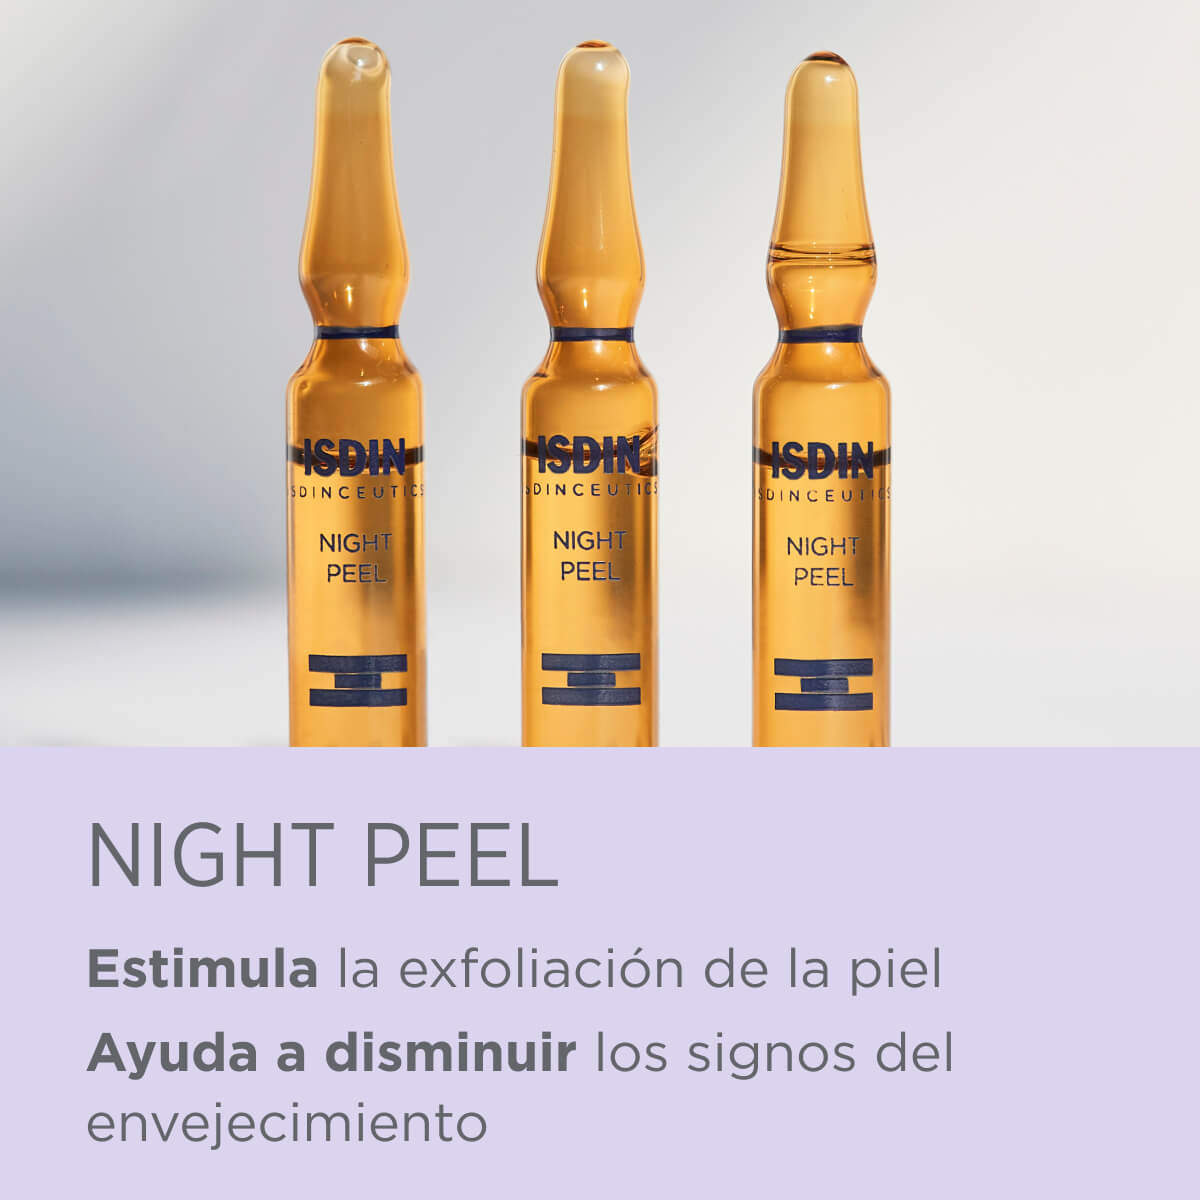 Isdinceutics Night Peel - Peeling facial nocturno